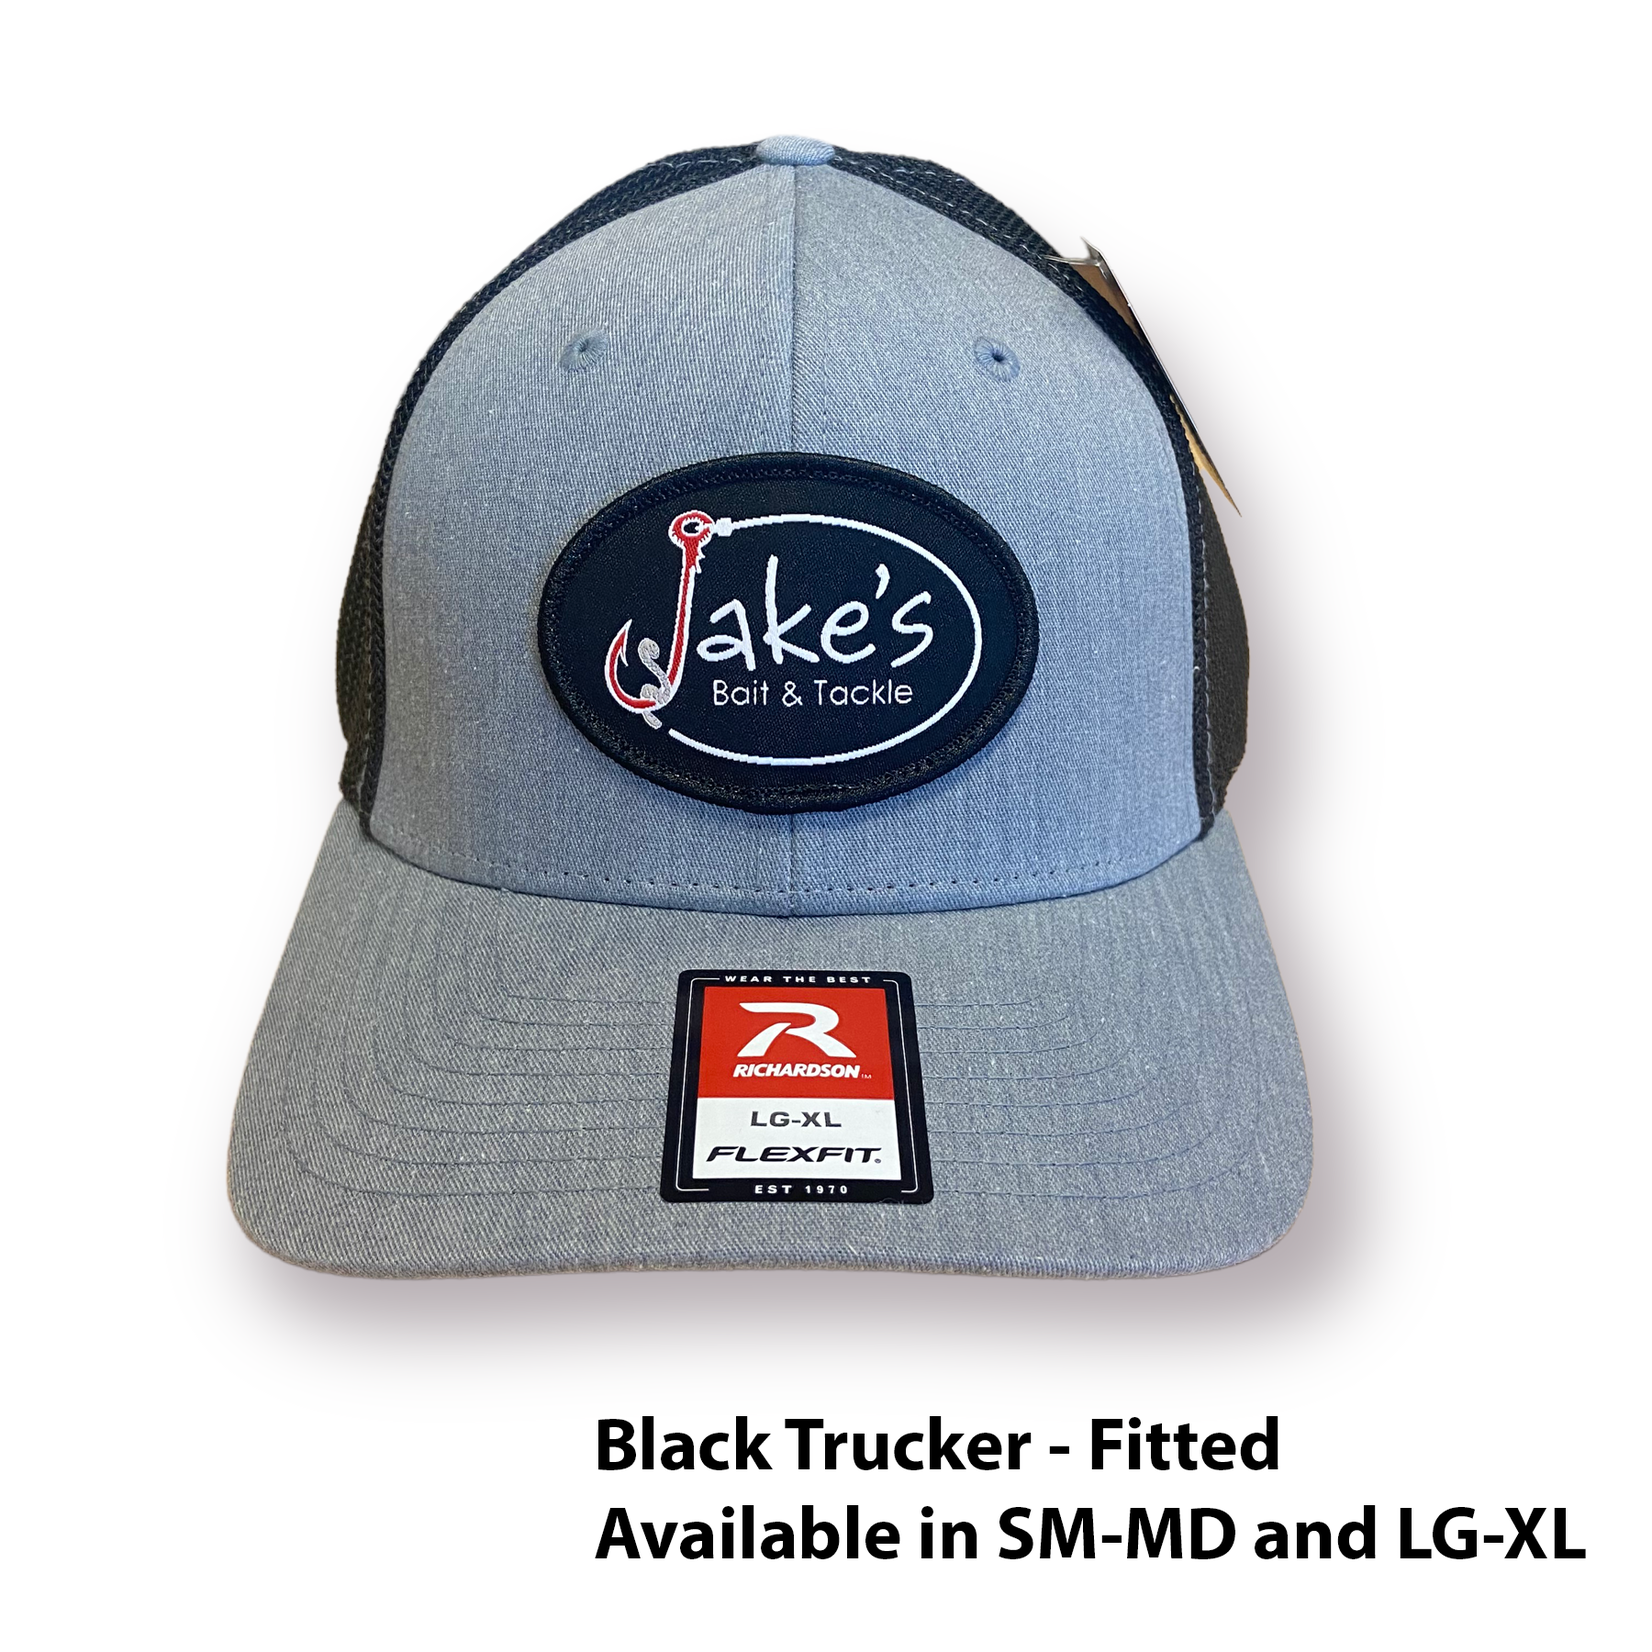 Jake's Bait Jake's Patch Black Oval Hat